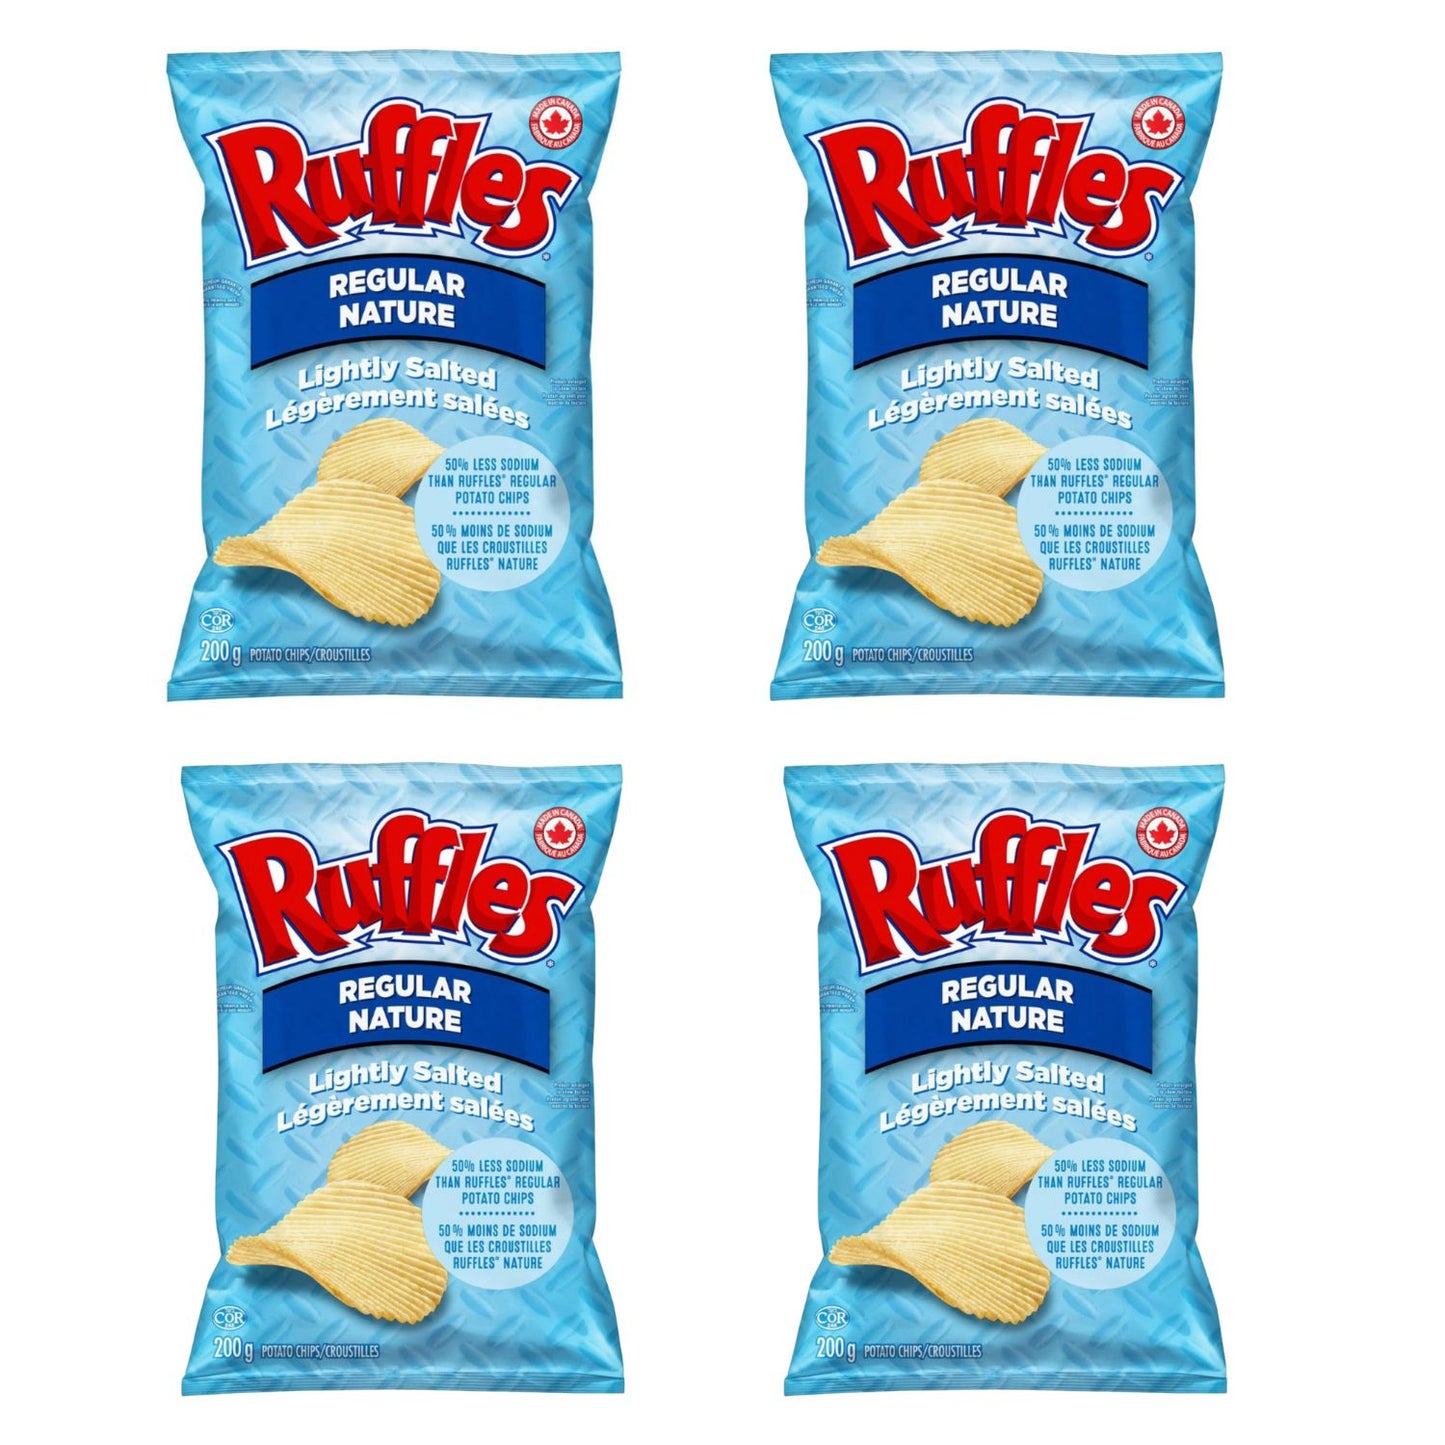 Ruffles Regular Lightly Salted pack of 4